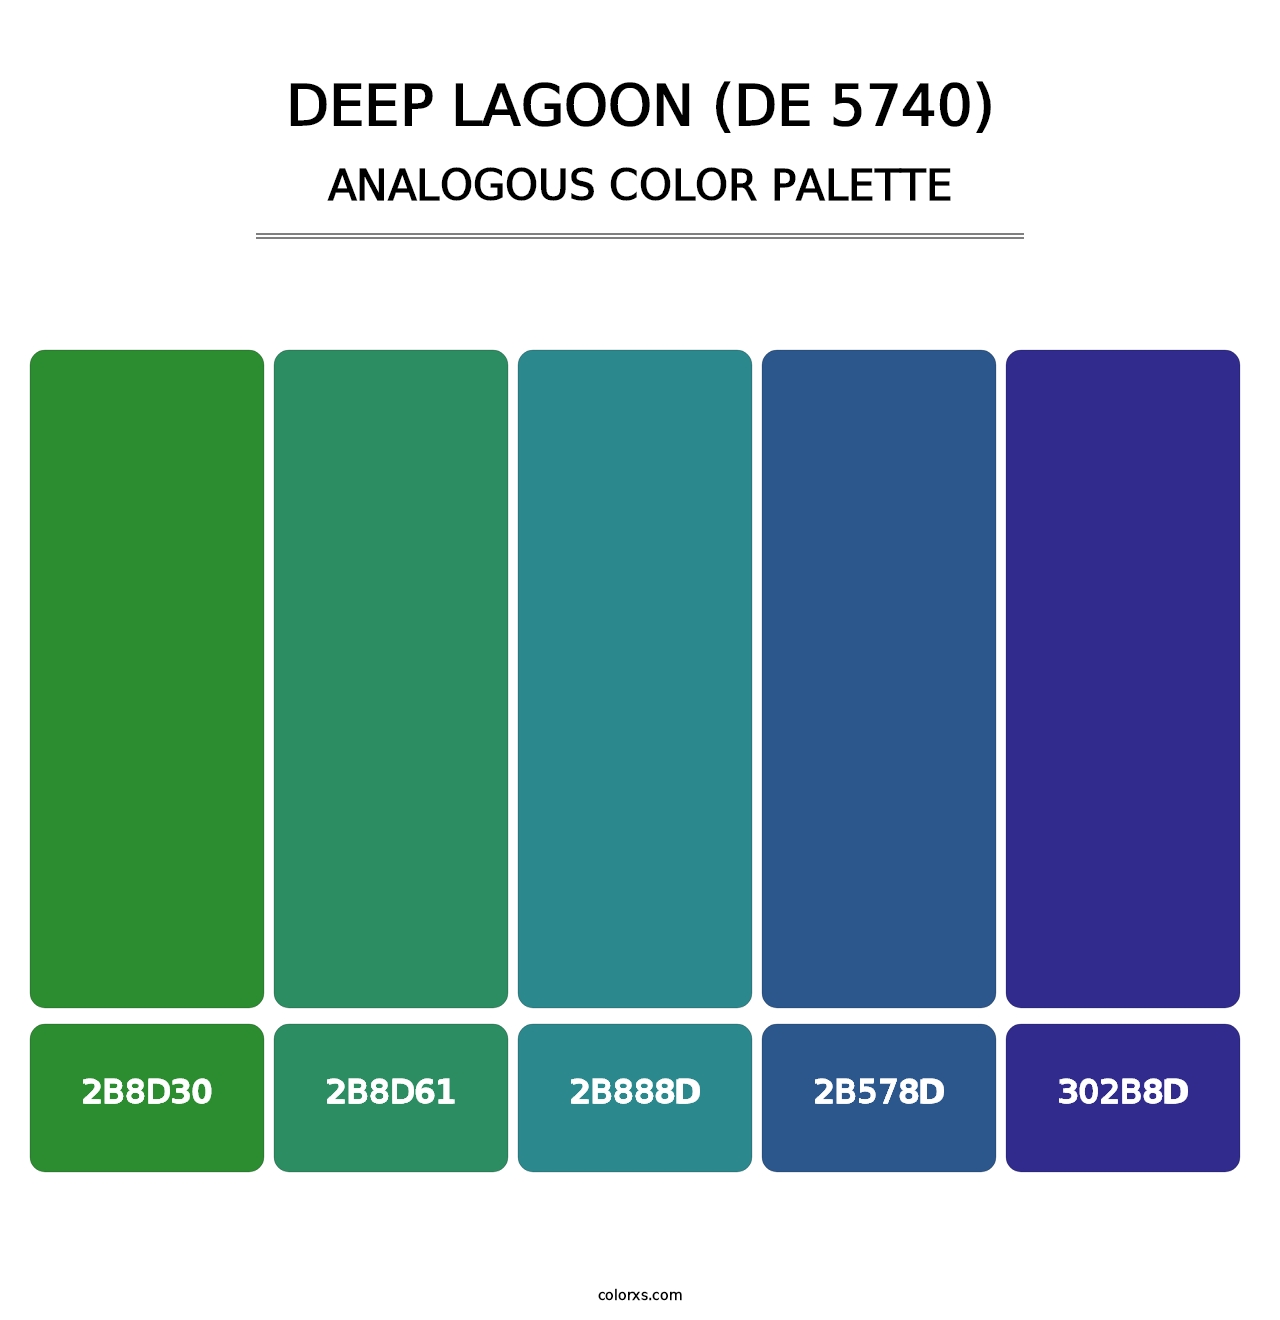 Deep Lagoon (DE 5740) - Analogous Color Palette